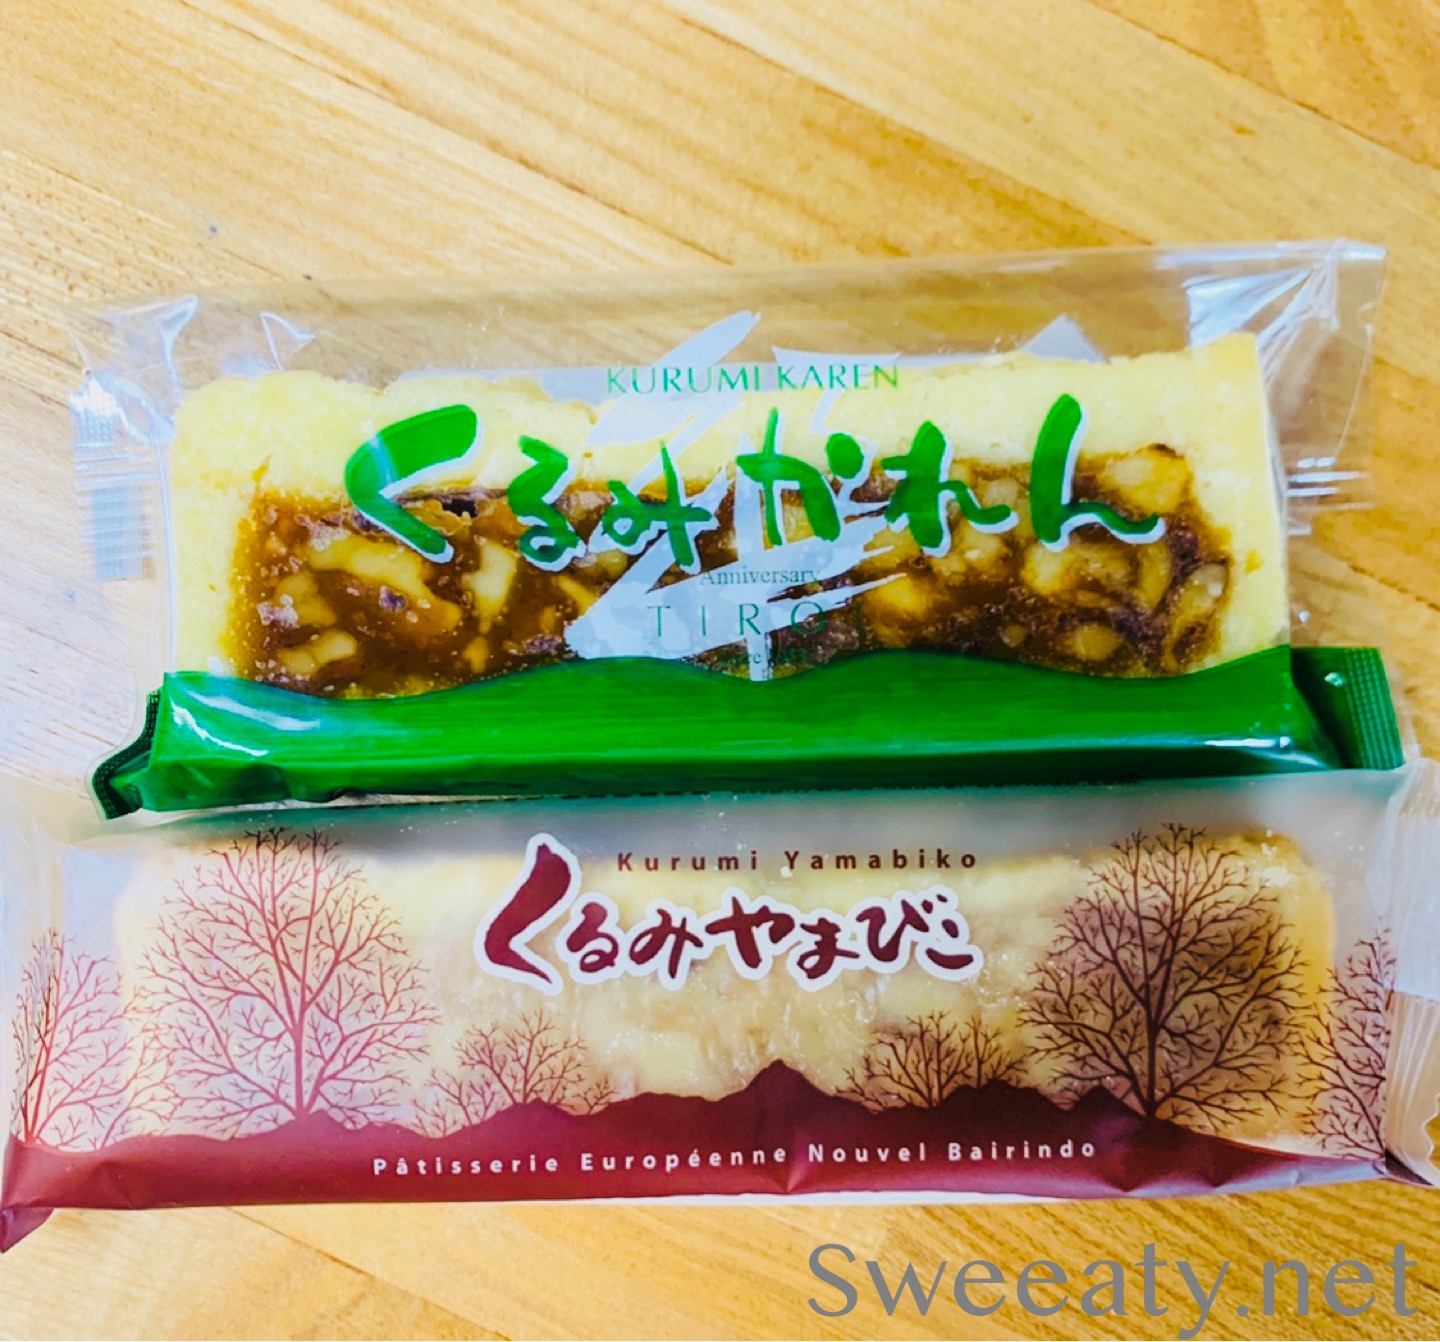 9月30日はくるみの日 くるみを使った長野のお菓子 食べ比べてみました Sweeaty 池尻と三茶の間で生きる主婦のスイーツブログ